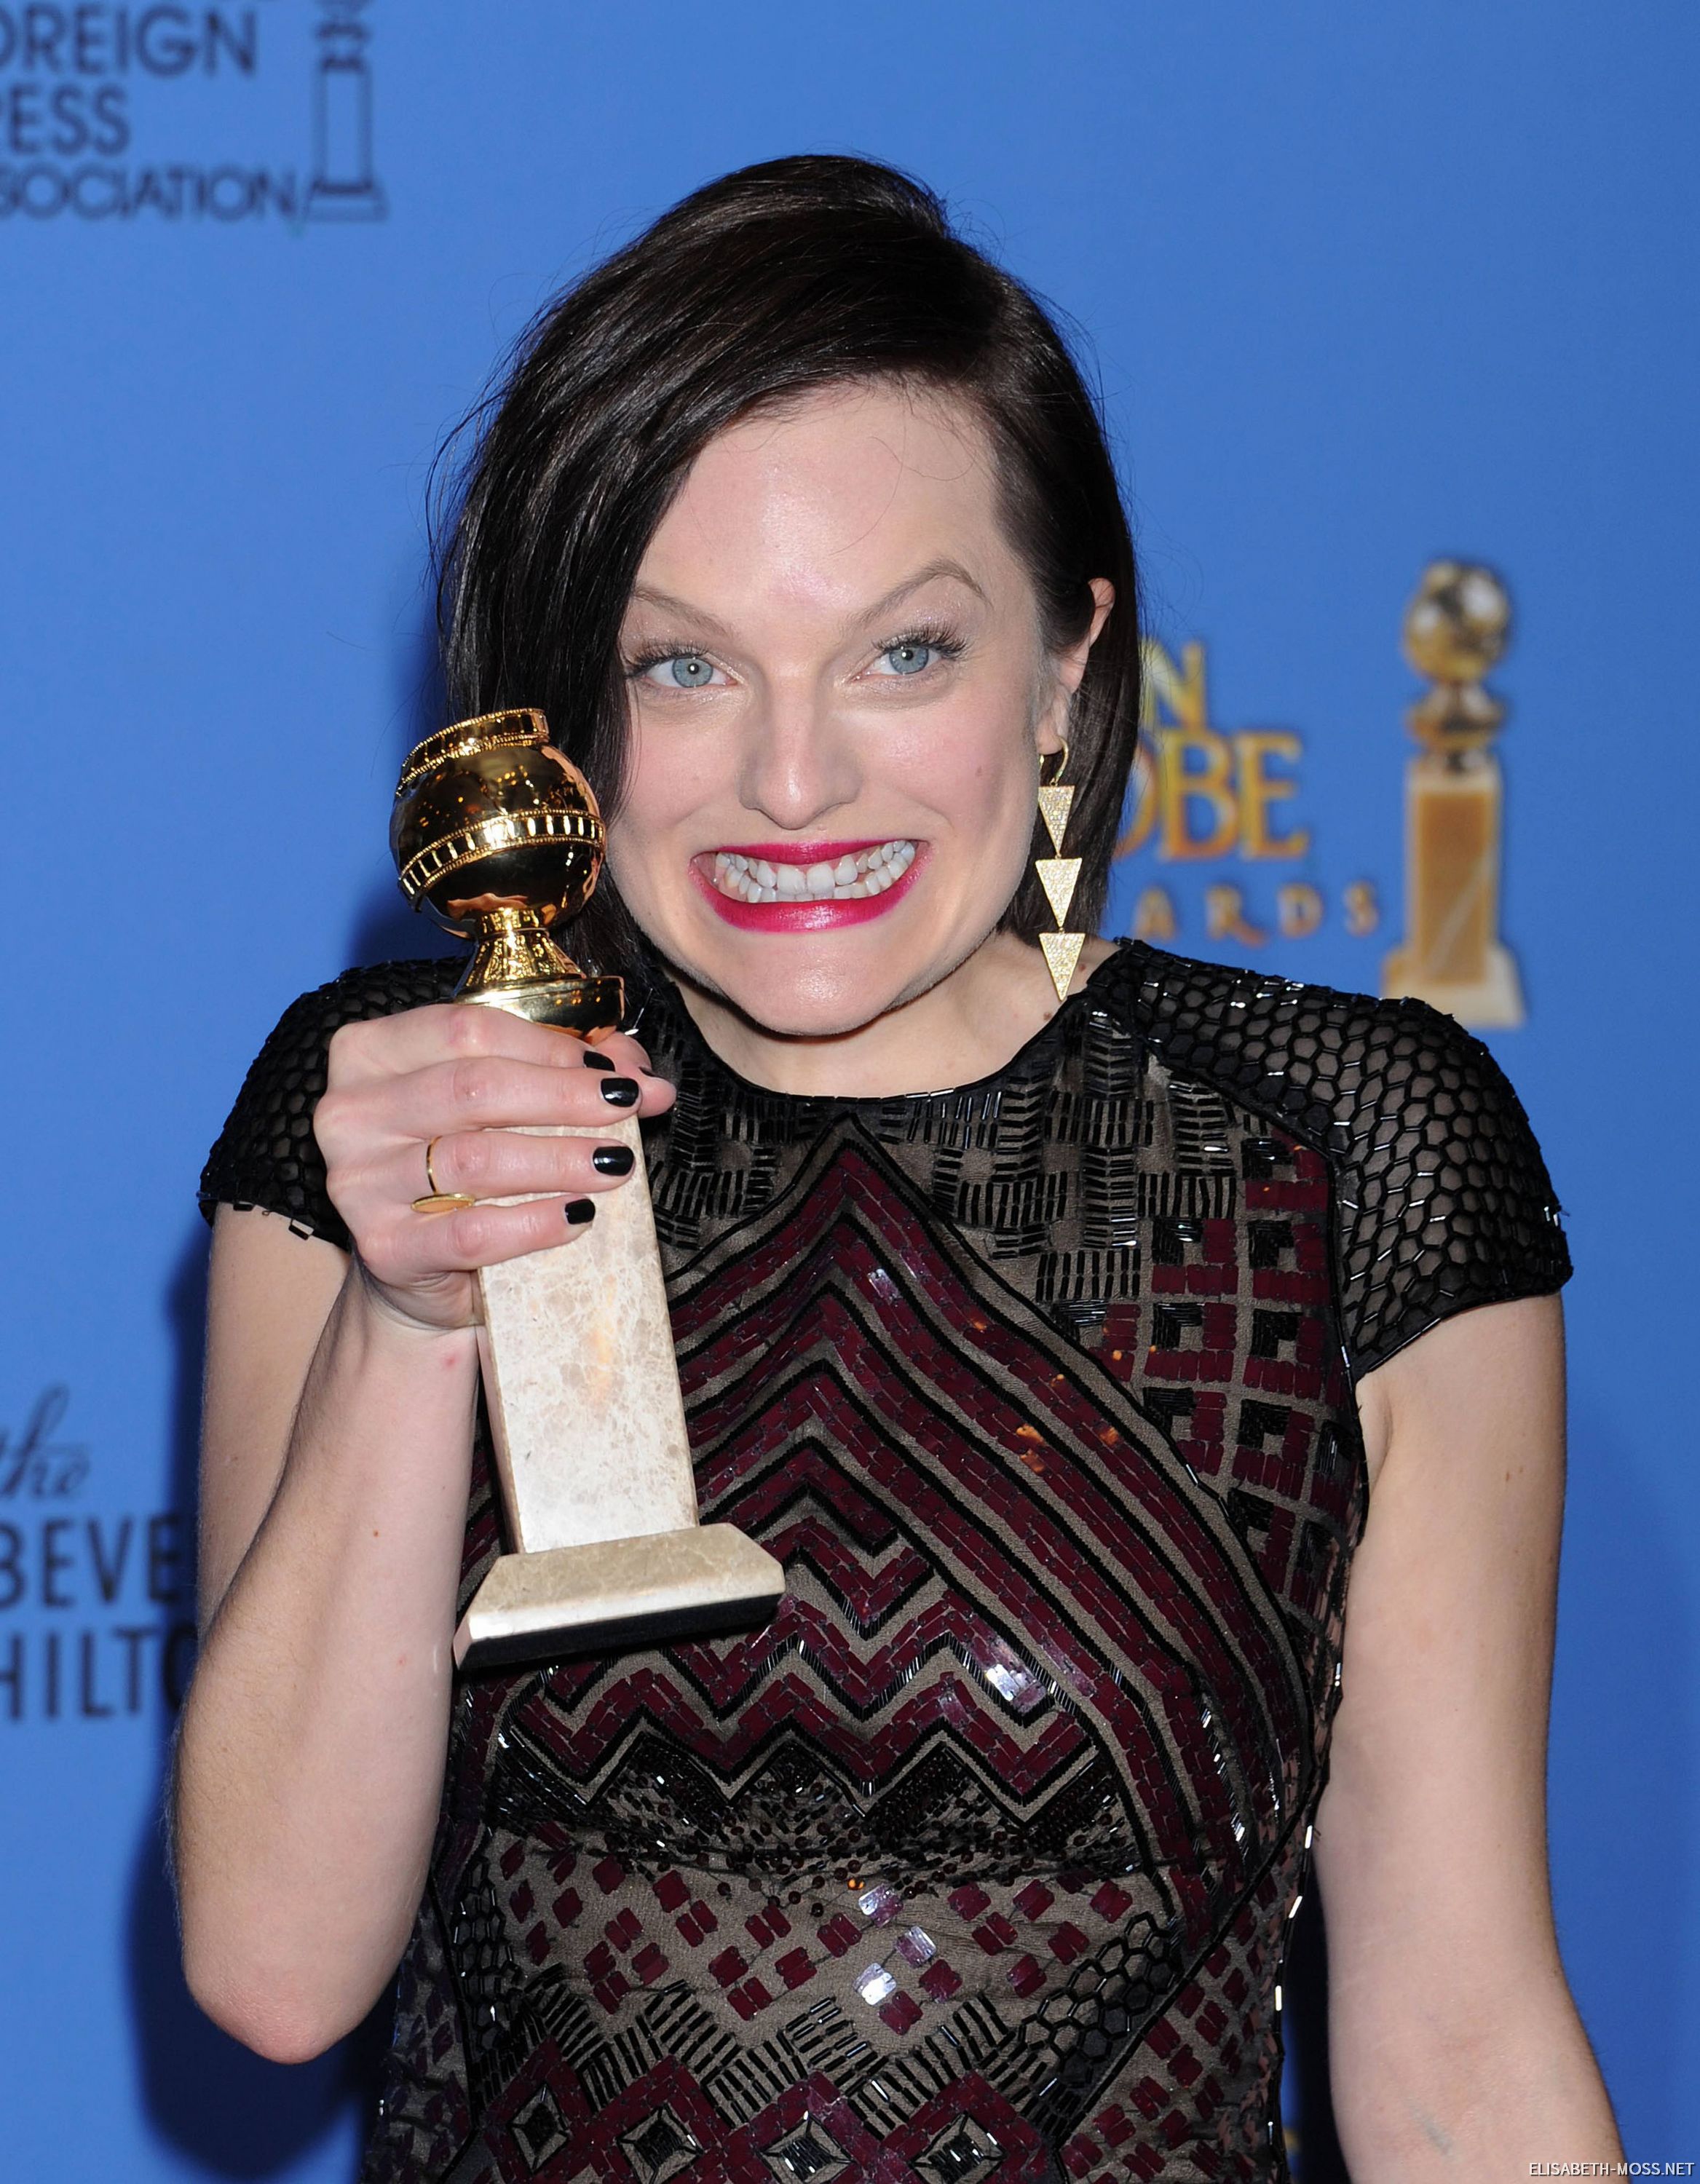 2014-01-12-71st-Annual-Golden-Globe-Awards-Press-017.jpg